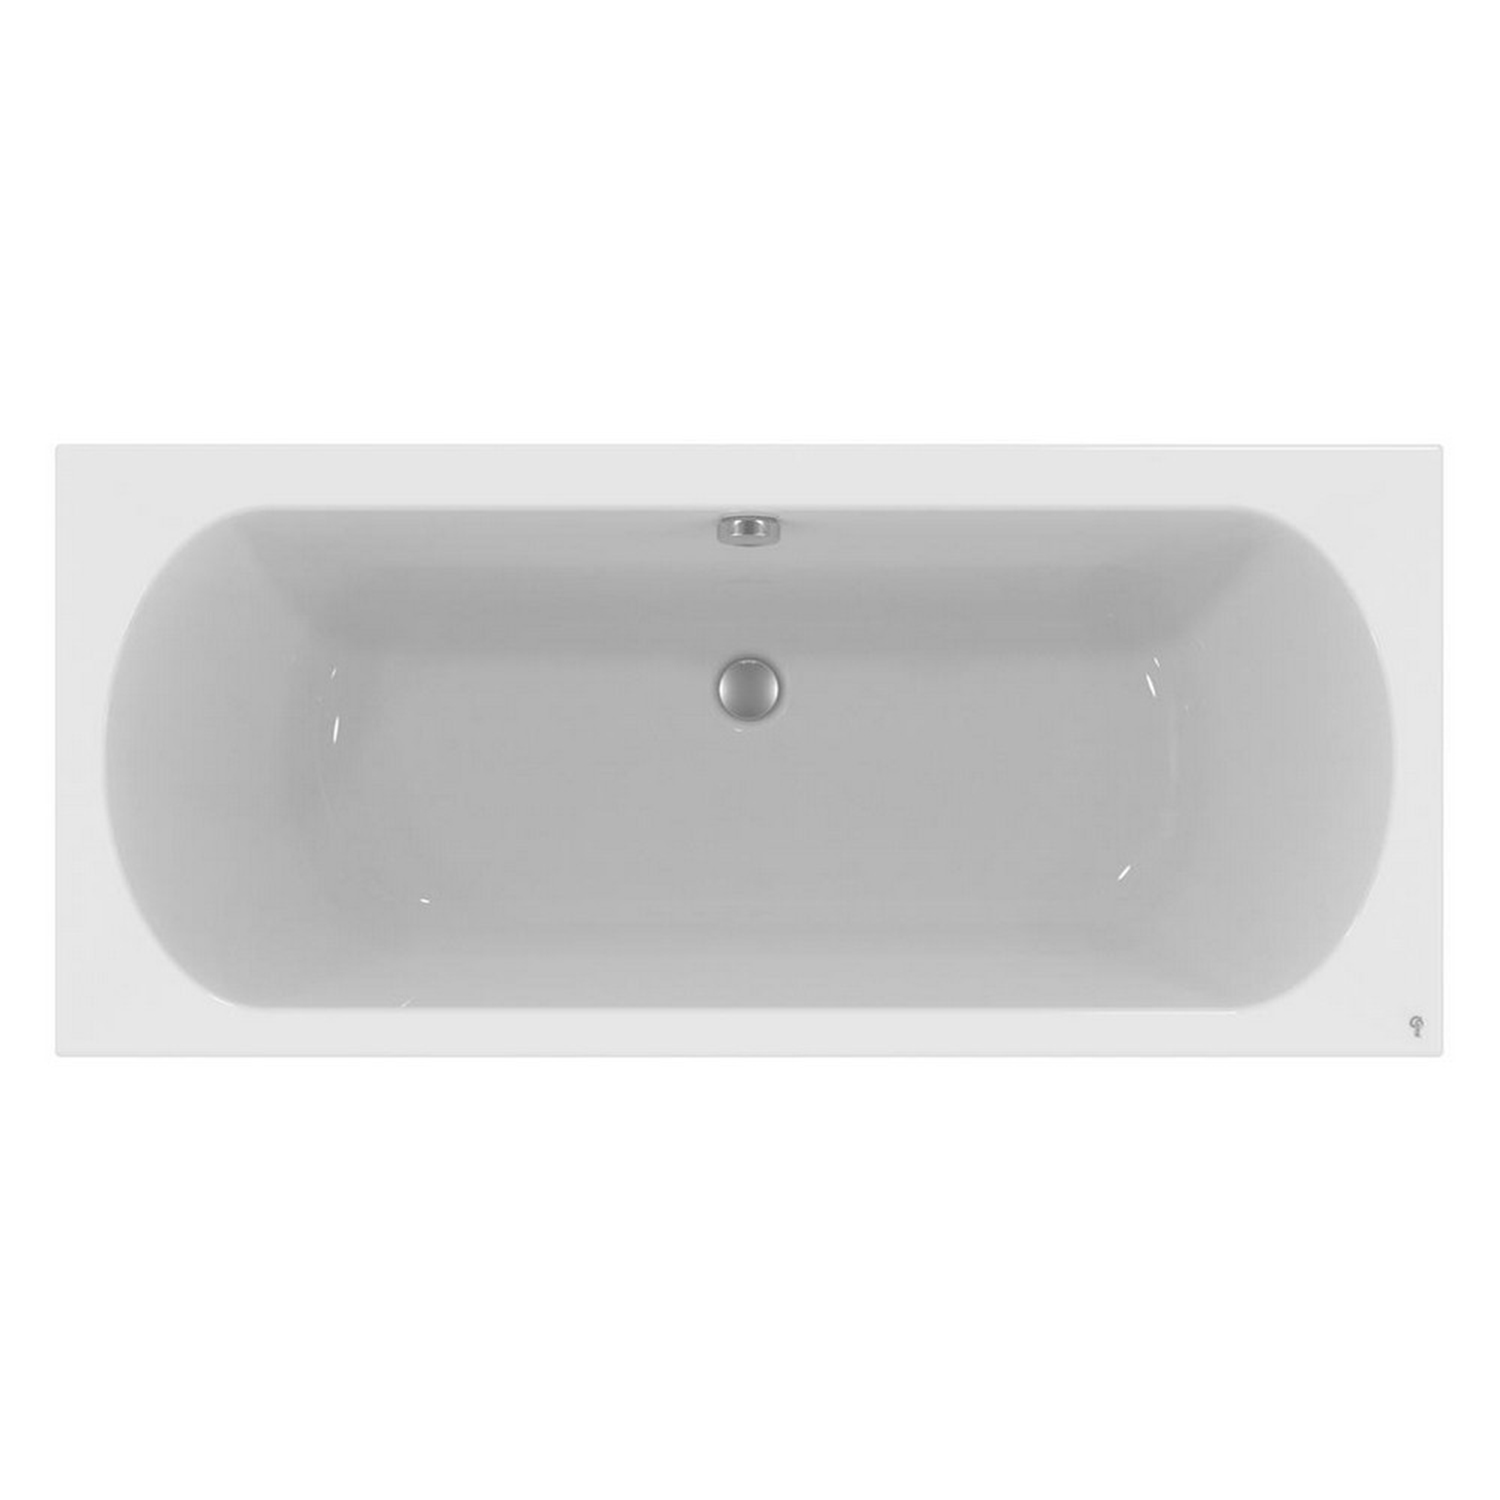 Акриловая ванна Ideal Standard Hotline 170х75 акриловая ванна ideal standard connect air 170х75 e106401 на ножках